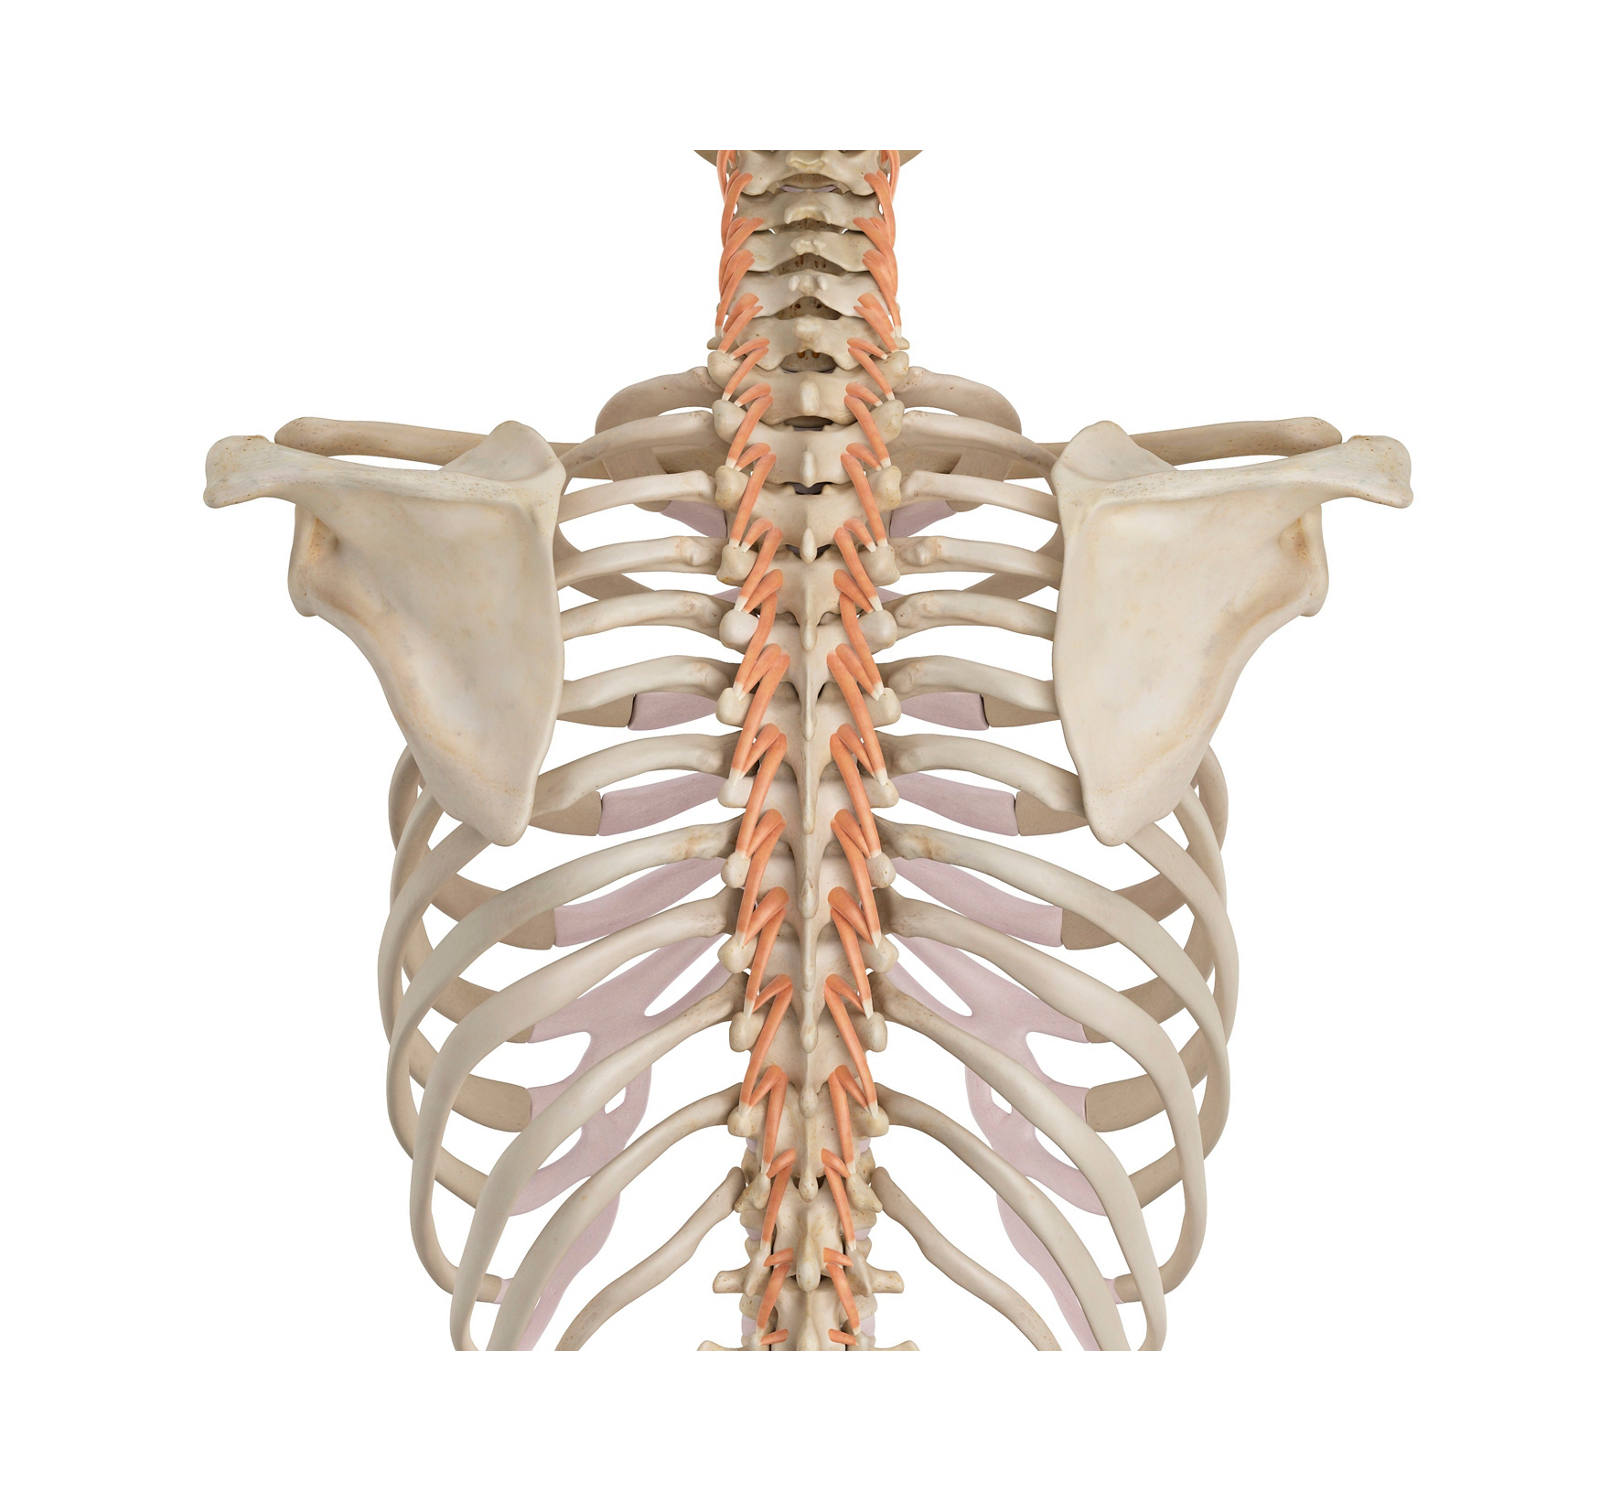 Die autochone Rückenmuskulatur an der Wirbelsäule